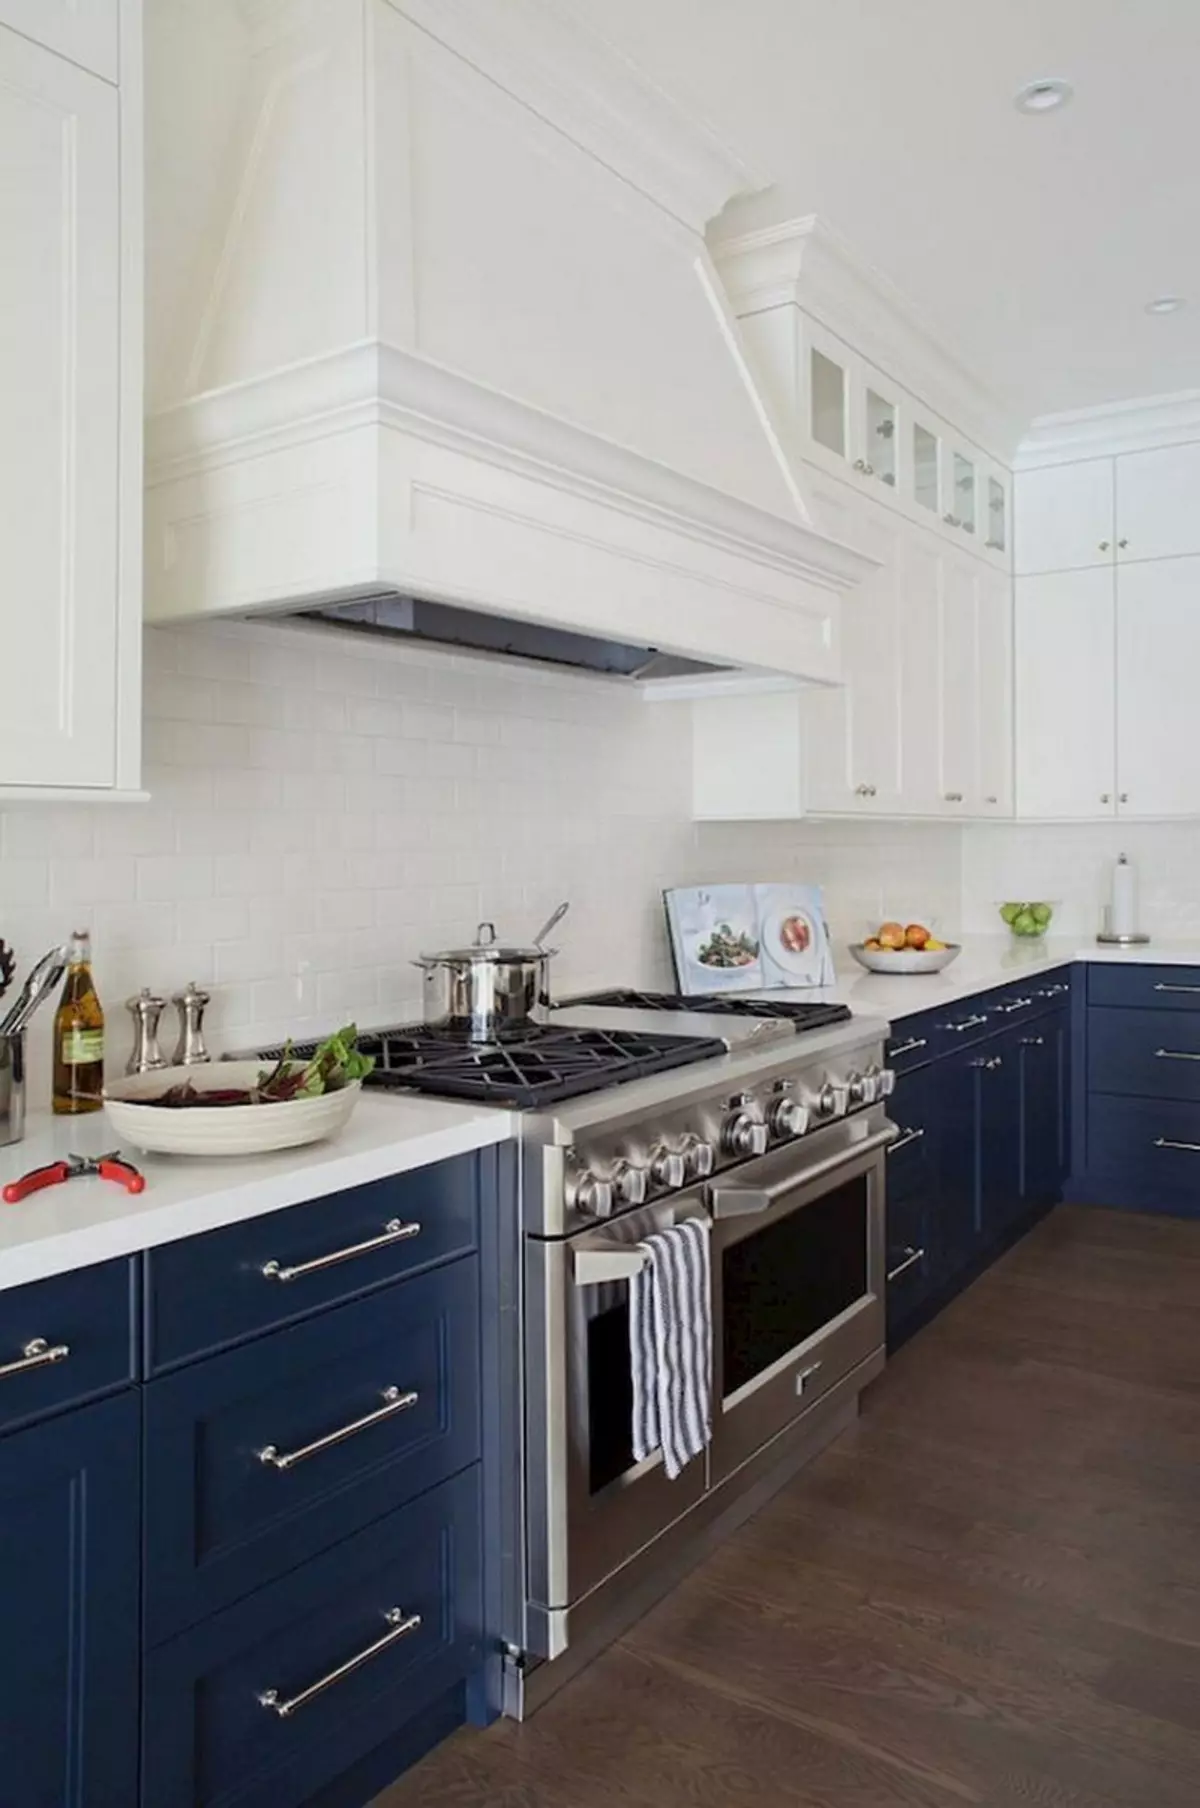 Cucina bianca-blu (64 foto): Caratteristiche dell'auricolare della cucina in colore bianco-blu per la cucina Interior design, accenti sulle pareti in colori simili 9393_7